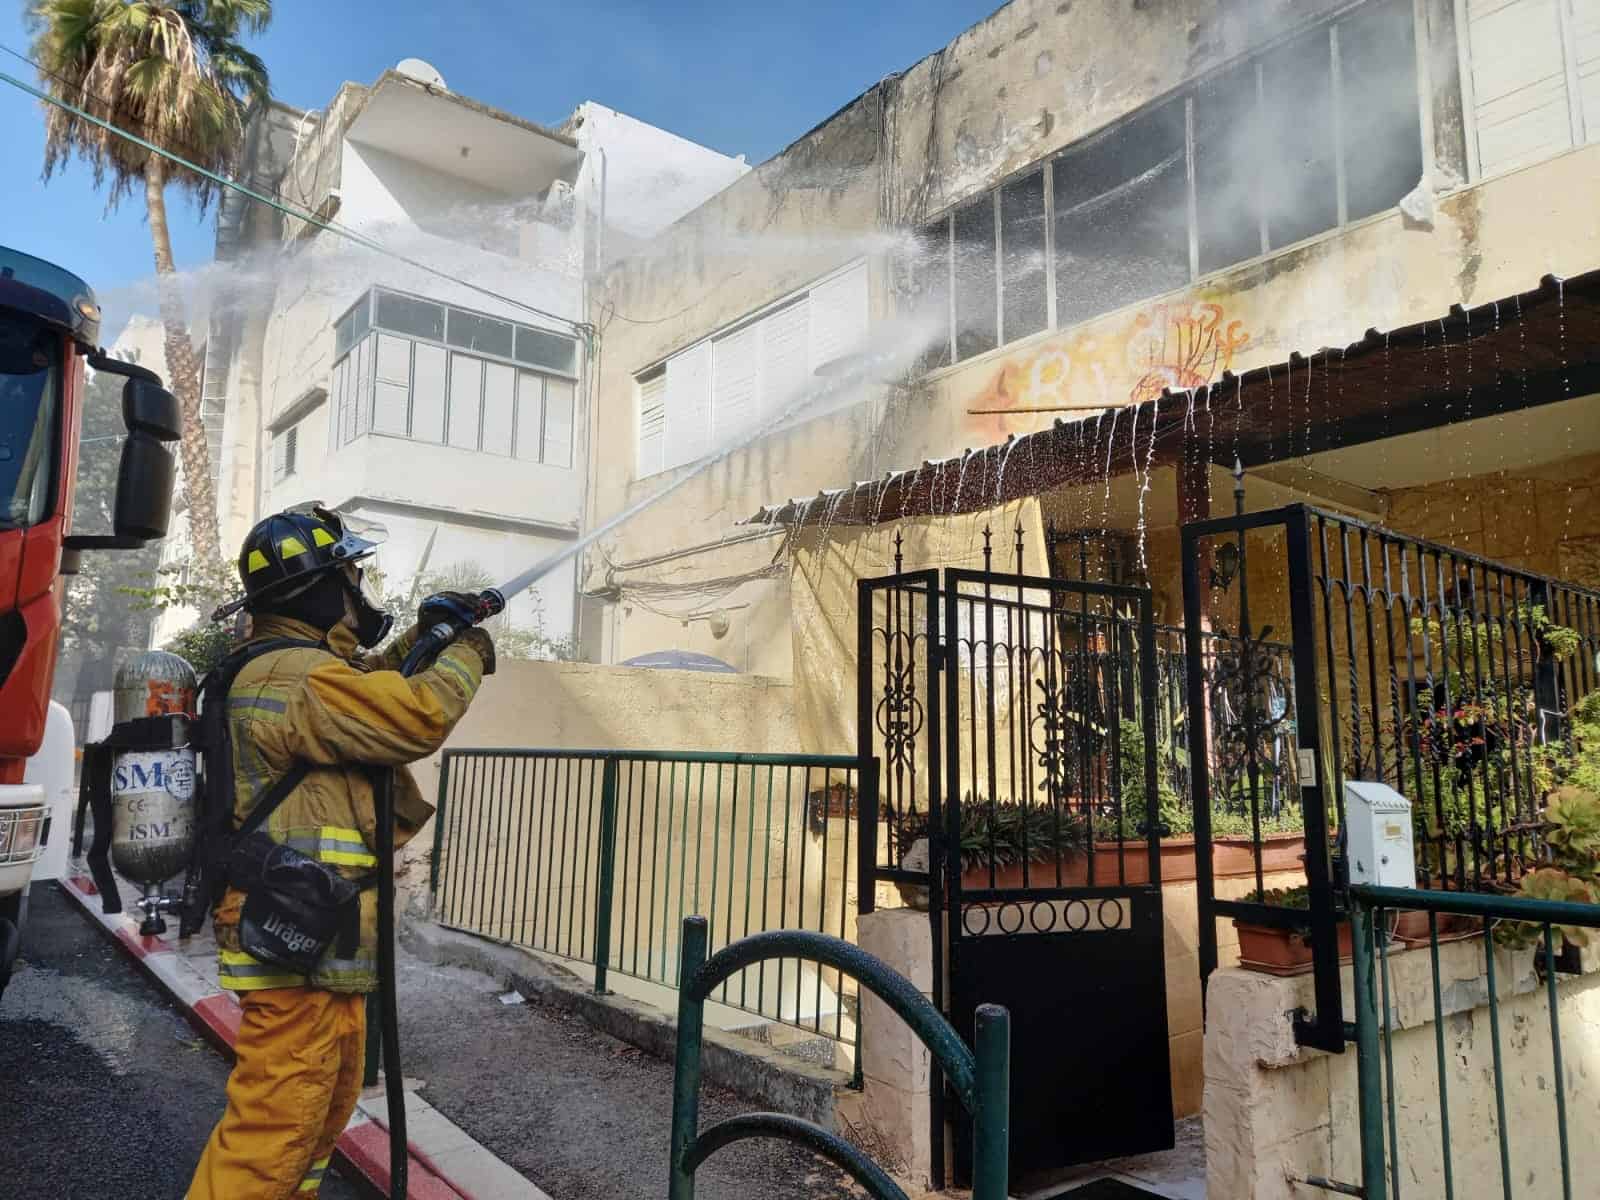 שריפה במבנה מגורים בחיפה | צפו בפעולות הכיבוי